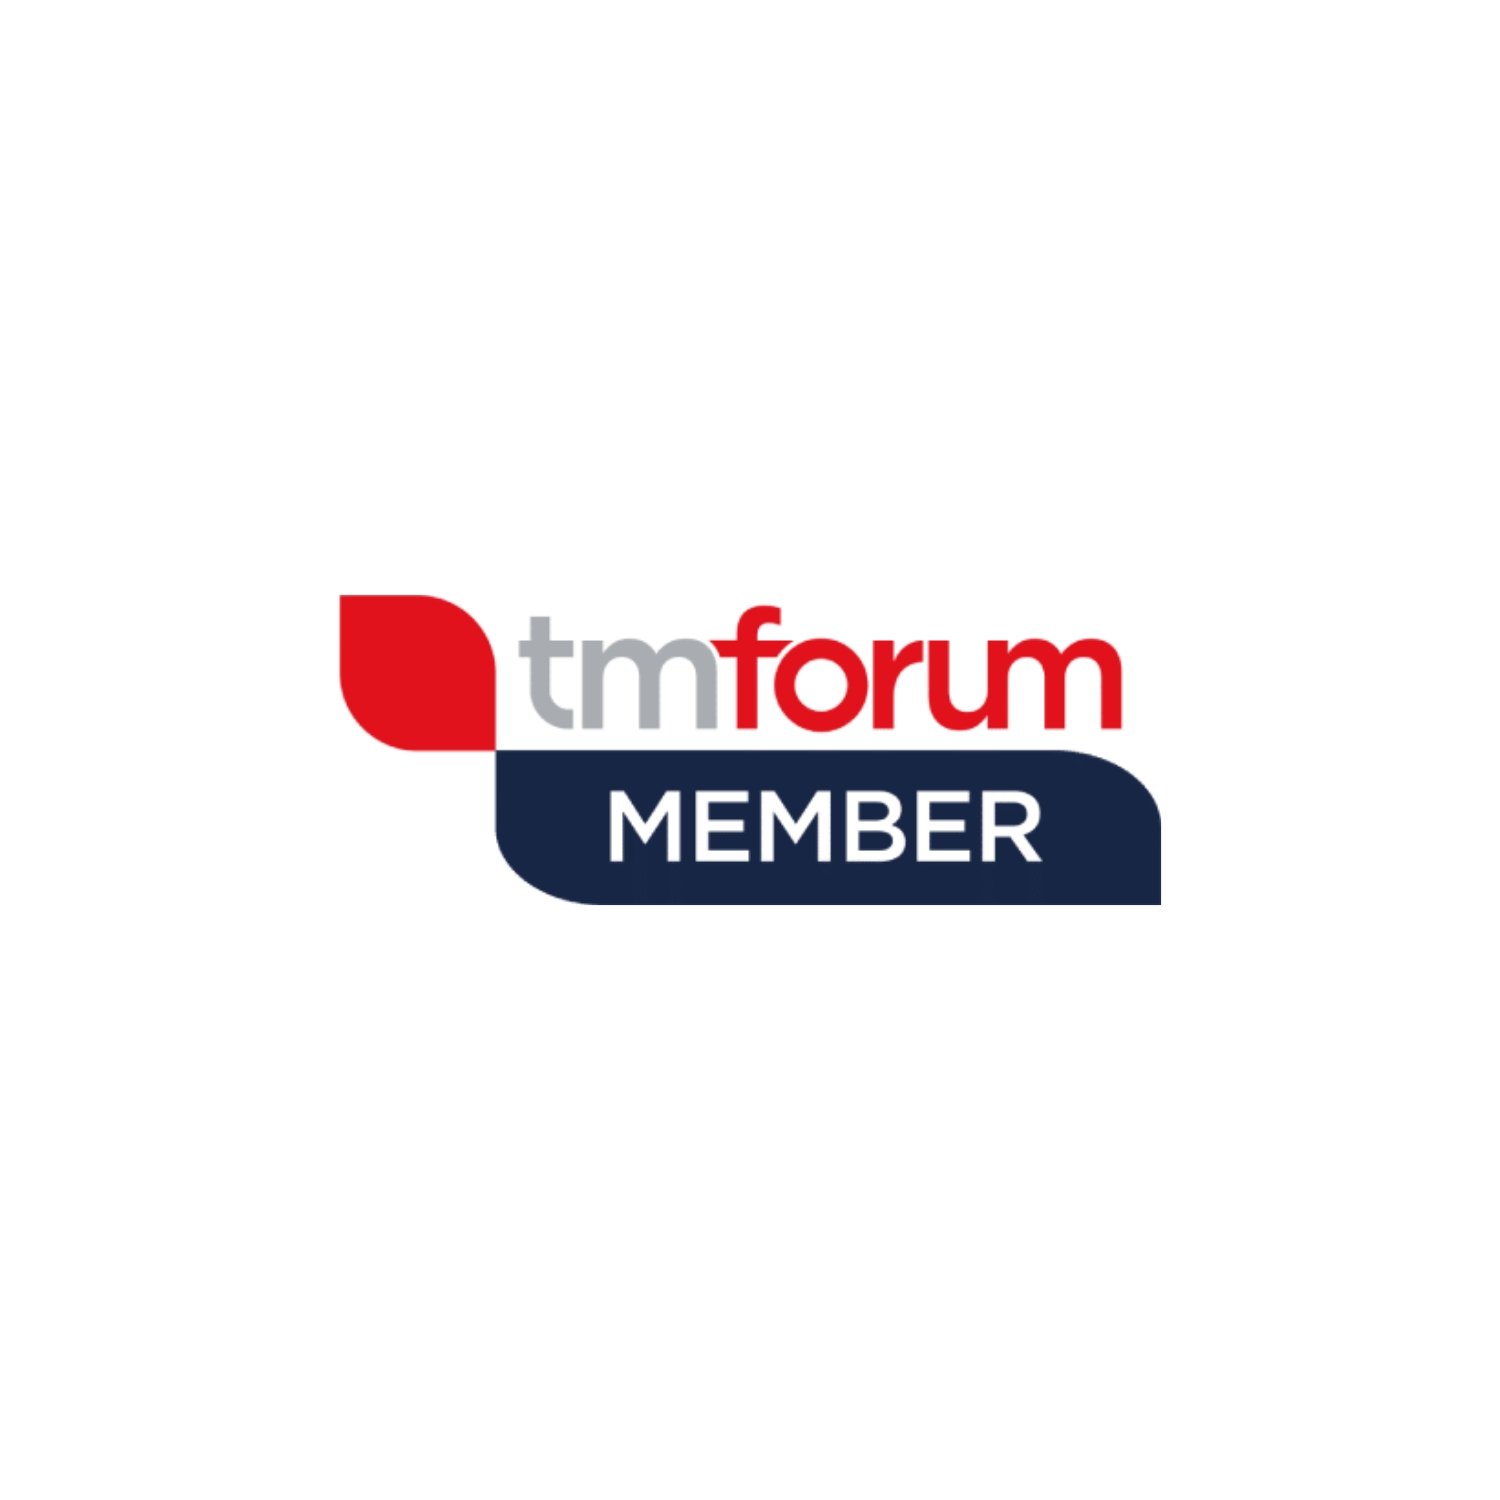 tm forum member